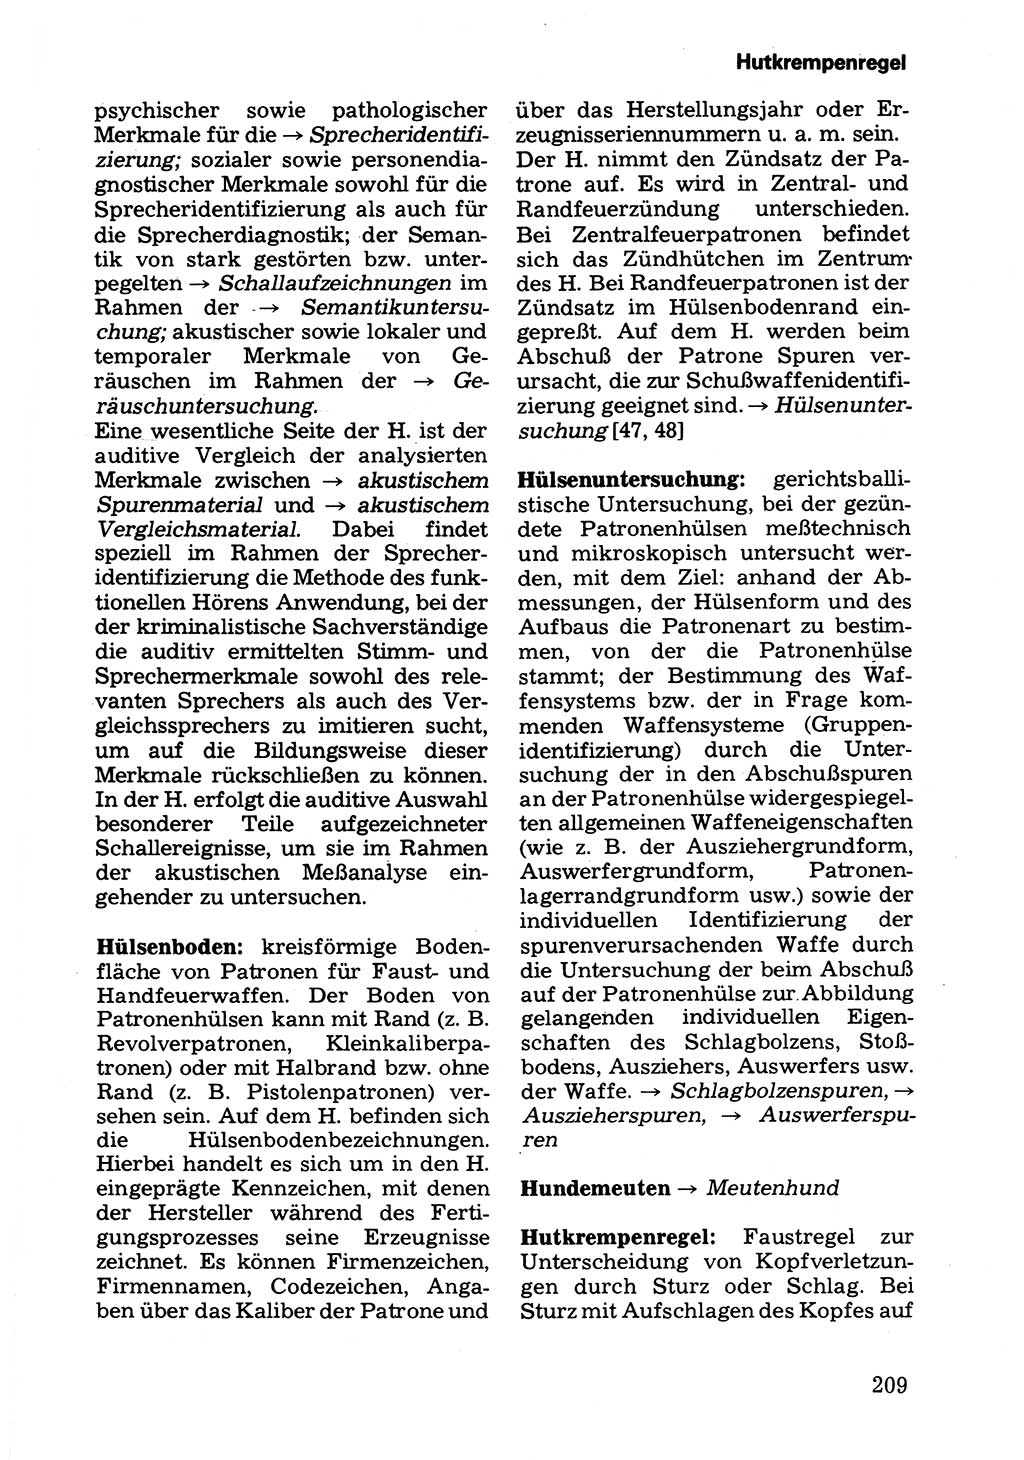 Wörterbuch der sozialistischen Kriminalistik [Deutsche Demokratische Republik (DDR)] 1981, Seite 209 (Wb. soz. Krim. DDR 1981, S. 209)